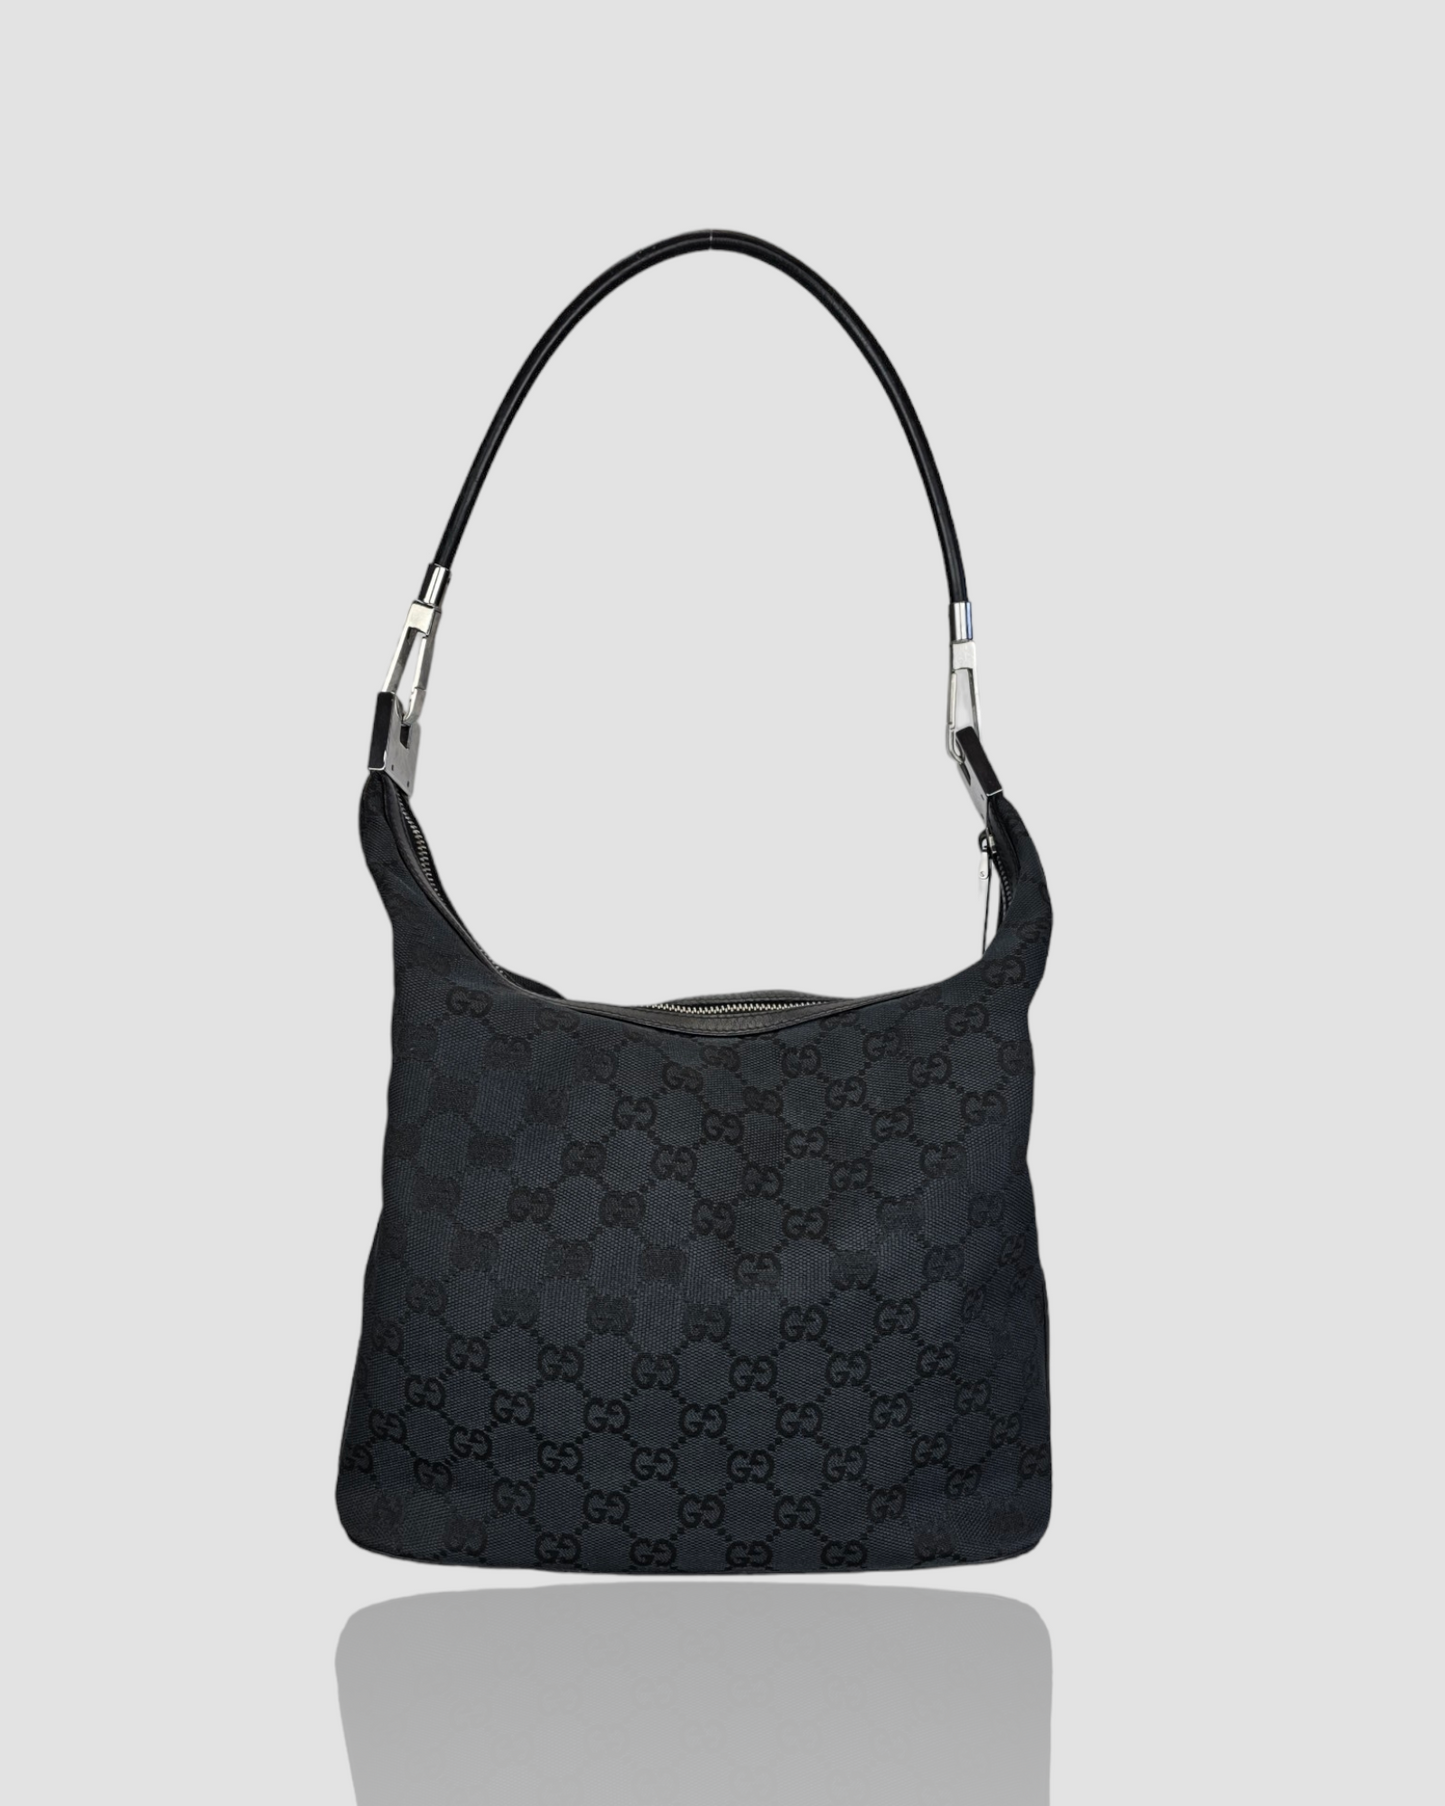 Gucci GG Shoulder Bag